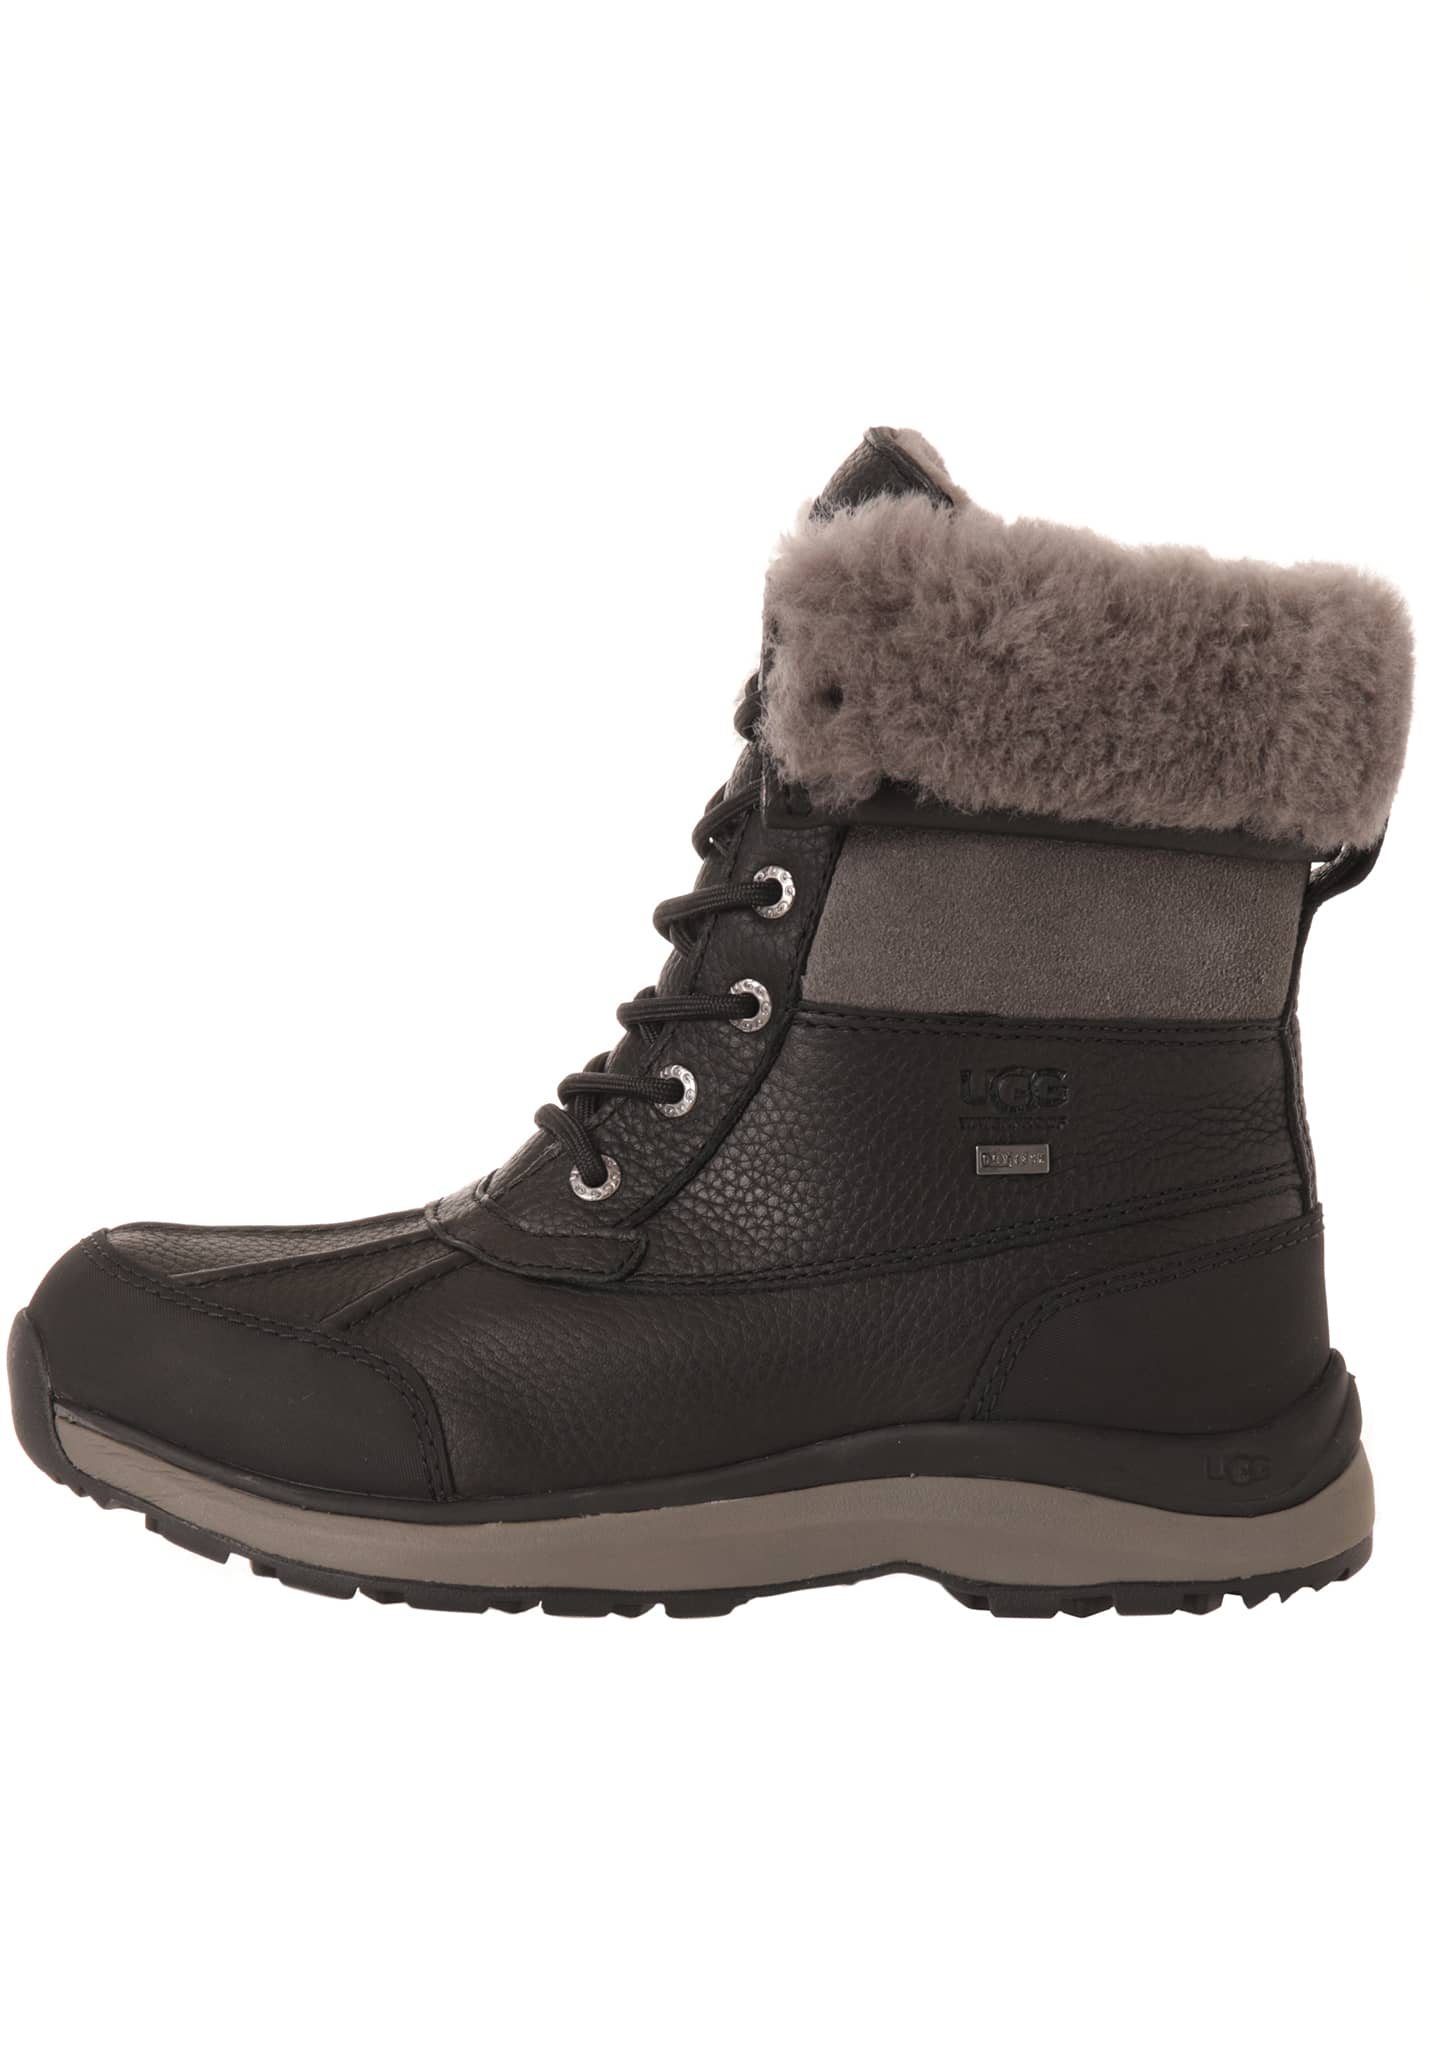 Ugg Adirondack Boot III Boots black 41